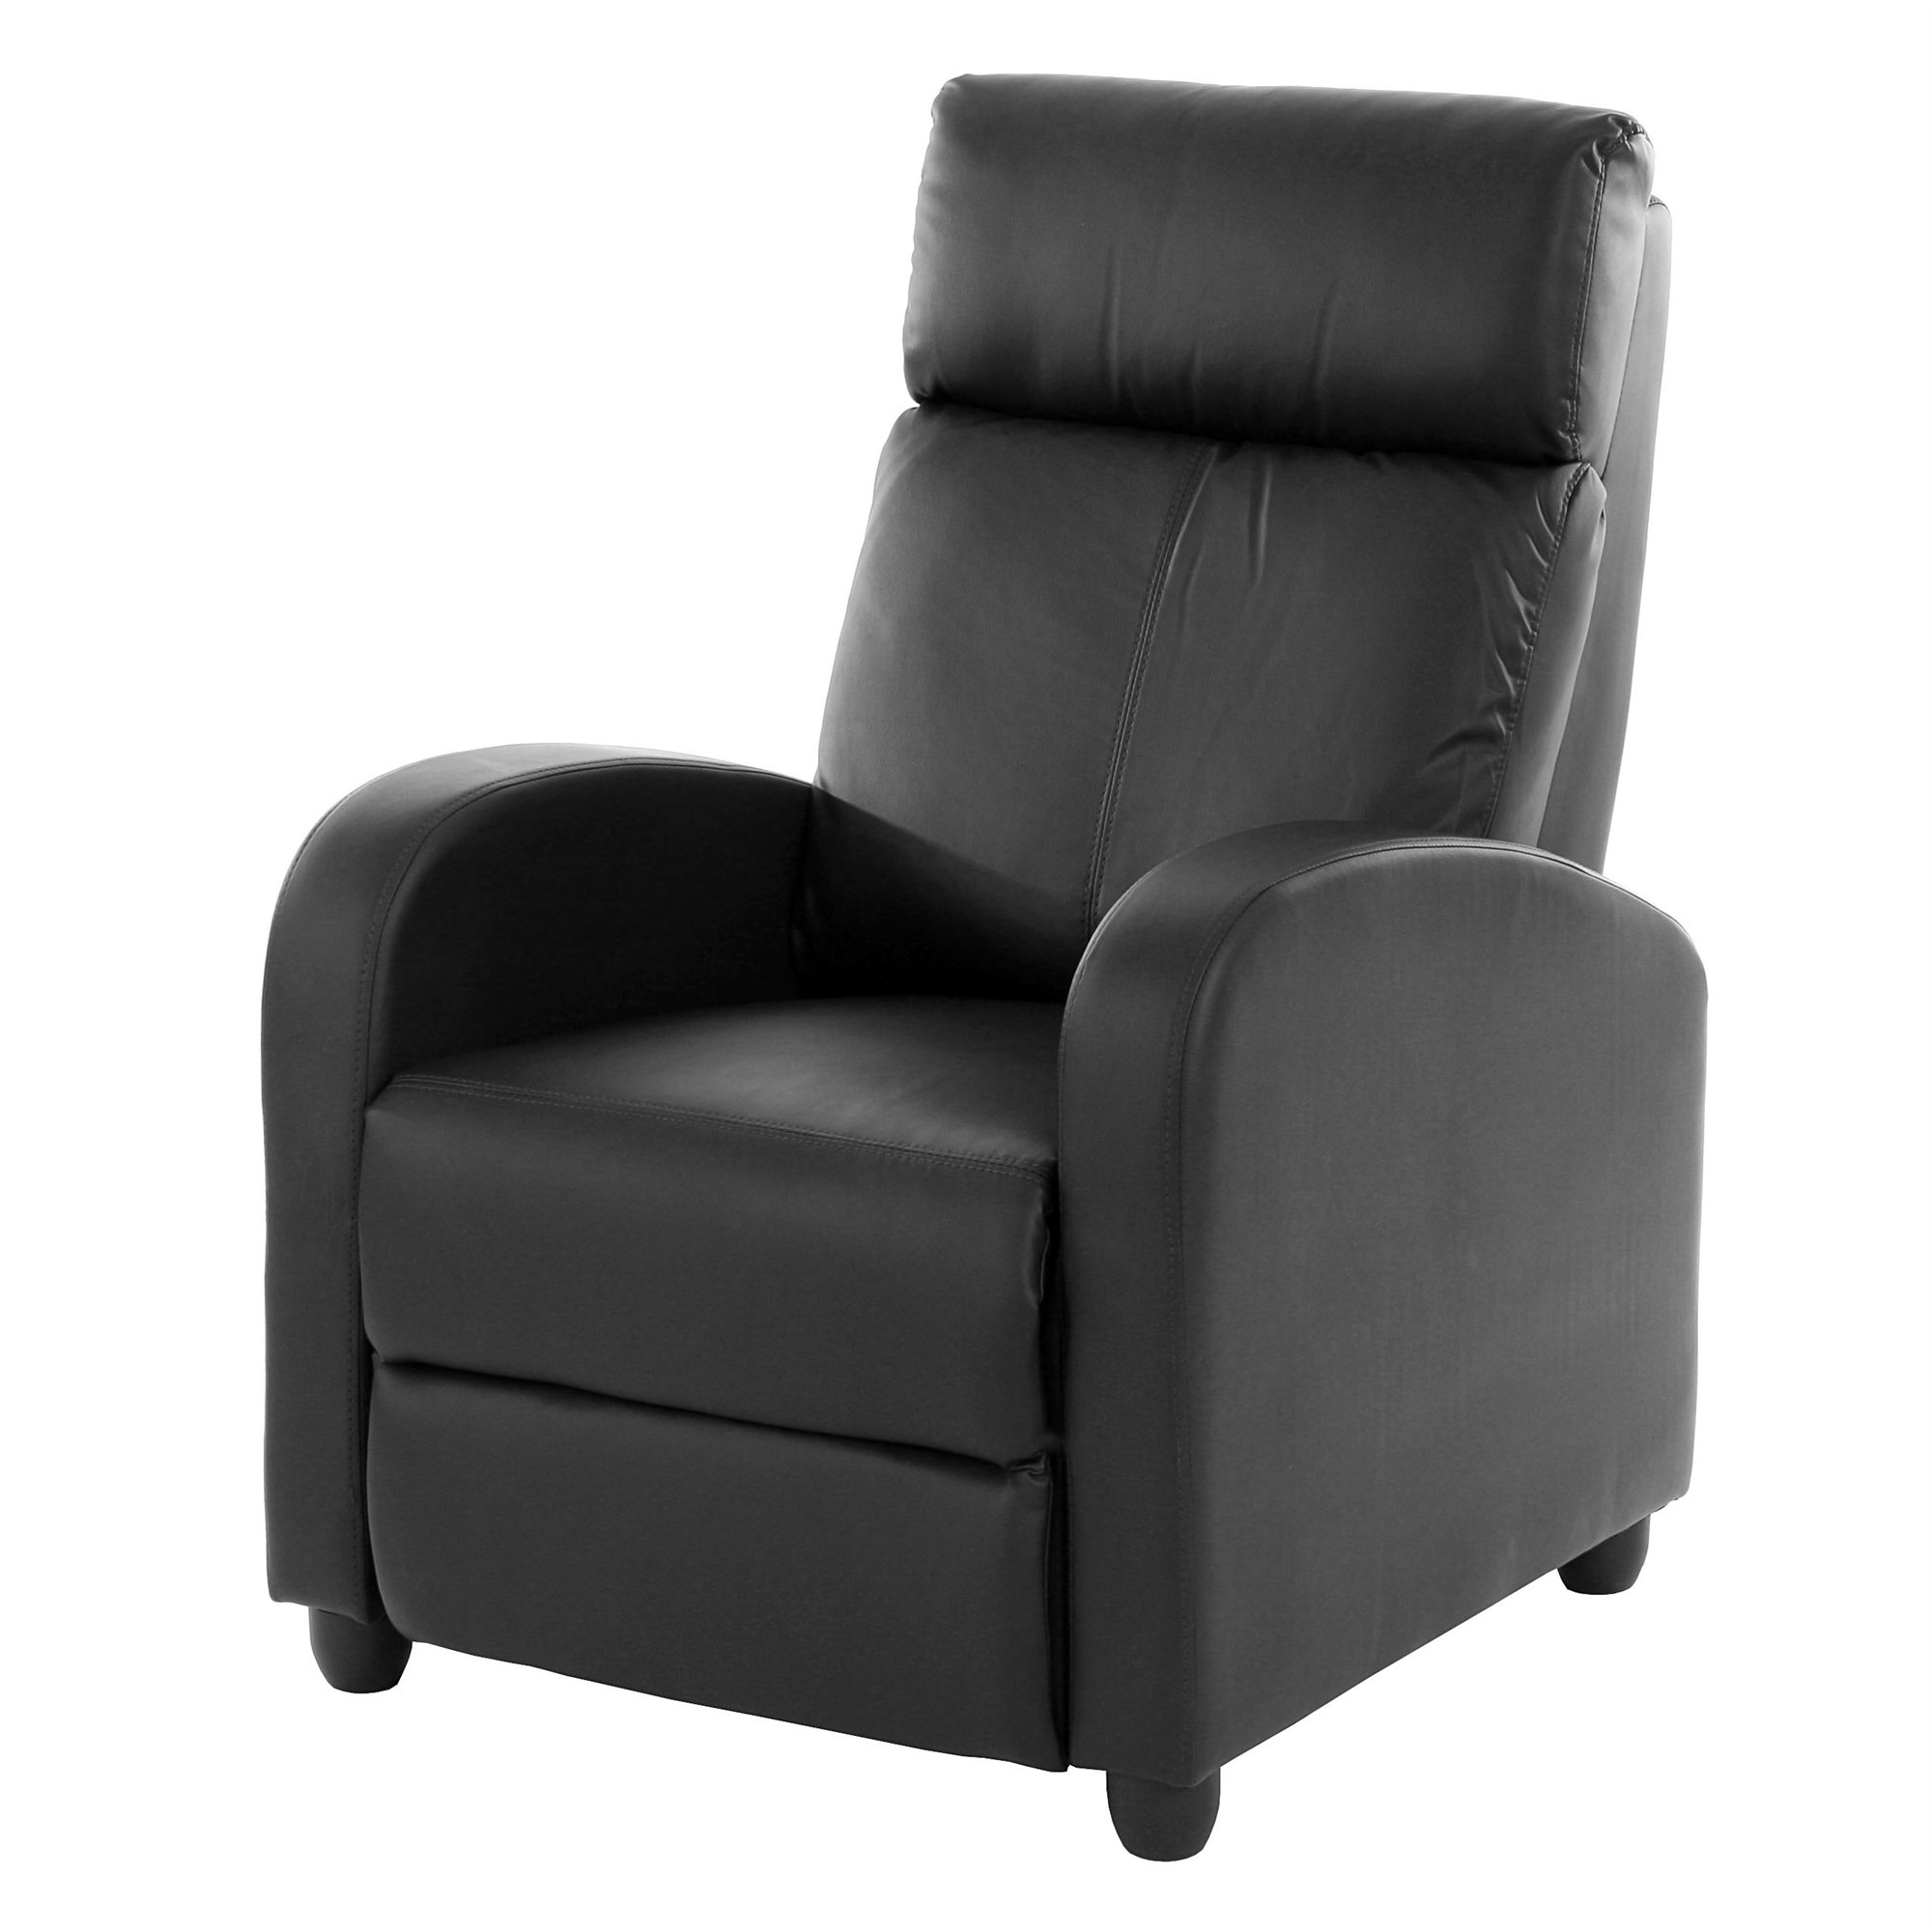 Sillón Relax reclinable DENVER, tapizado en piel, muy cómodo, color negro